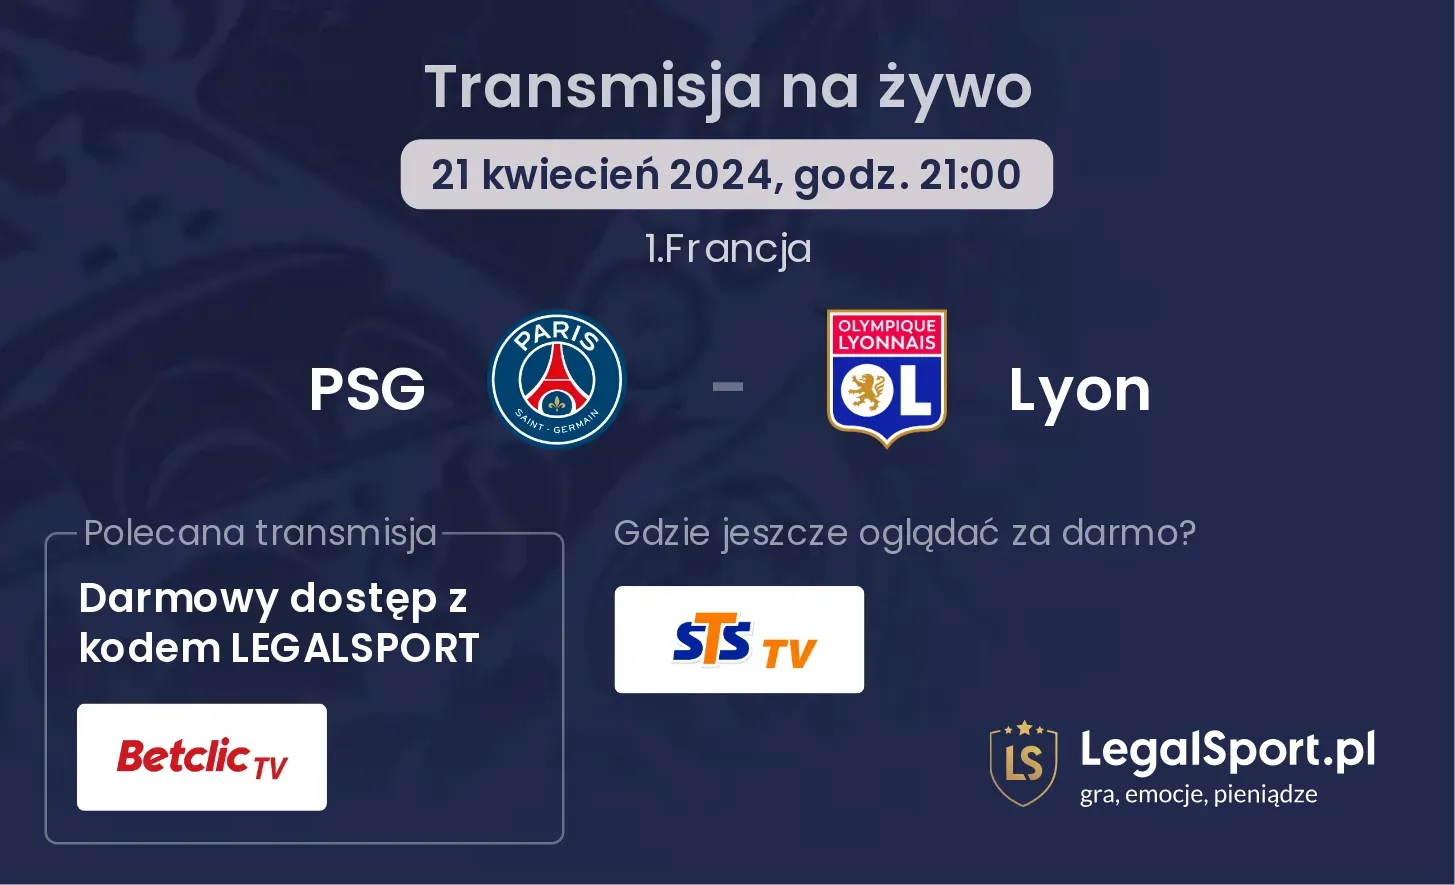 PSG - Lyon transmisja na żywo